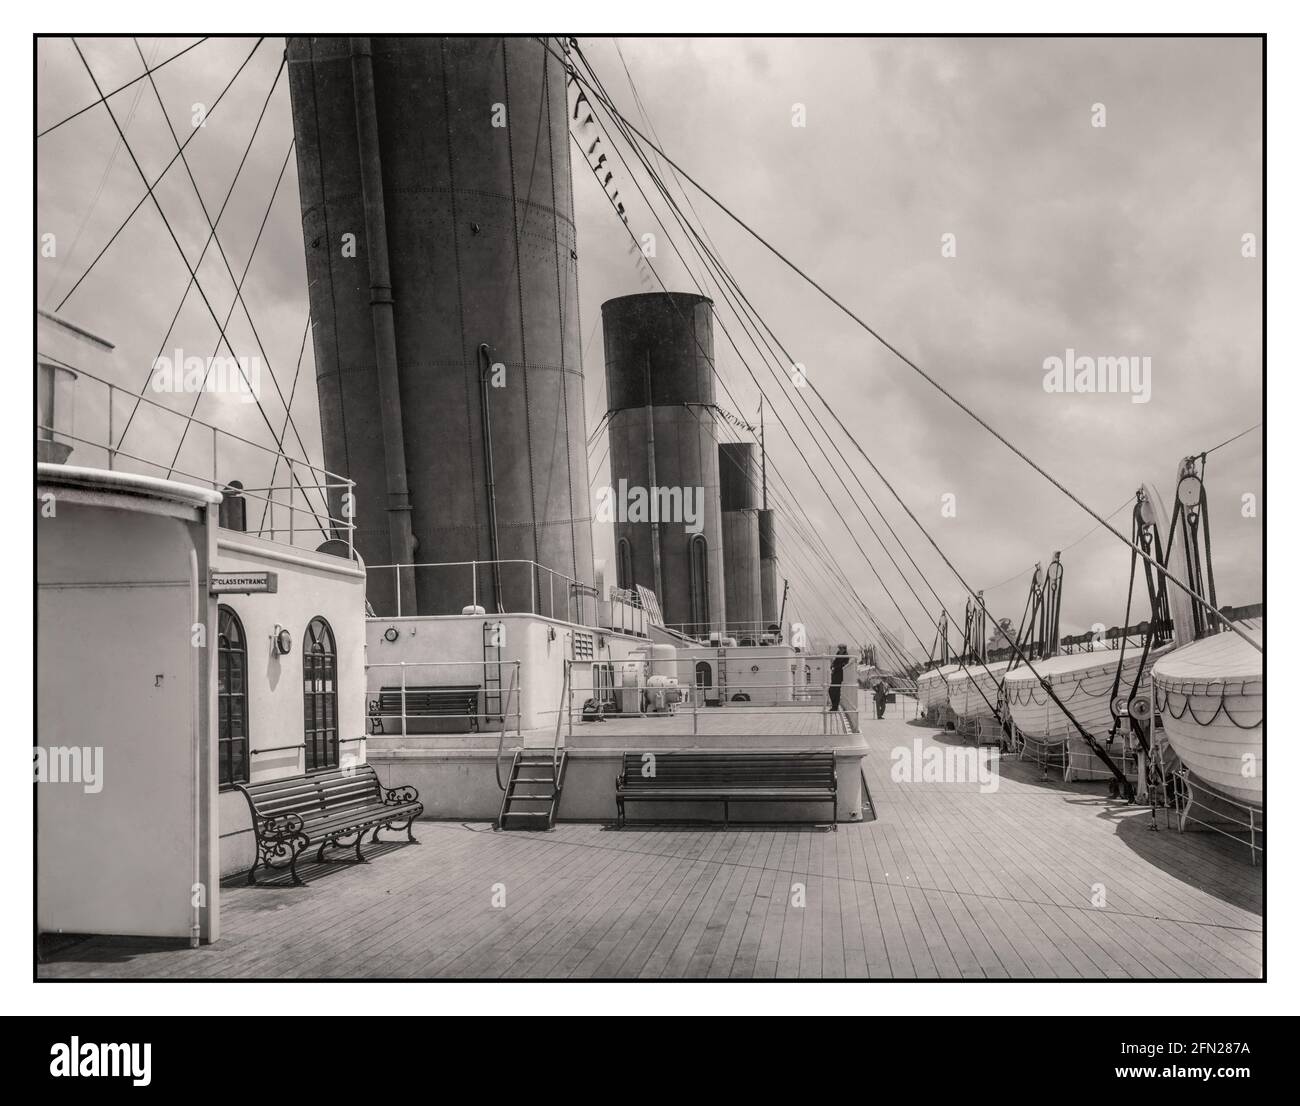 TITANIC RETTUNGSBOOTE DECK 1910s RMS Titanic First Class Bootsdeck White Star Line mit makellosen Decks, zweiter Klasse Eingang auf der linken Seite mit einer Reihe von Rettungsbooten auf der rechten Seite. Werbefoto vor dem Segeln auf seiner schicksalhaften Reise. Stockfoto